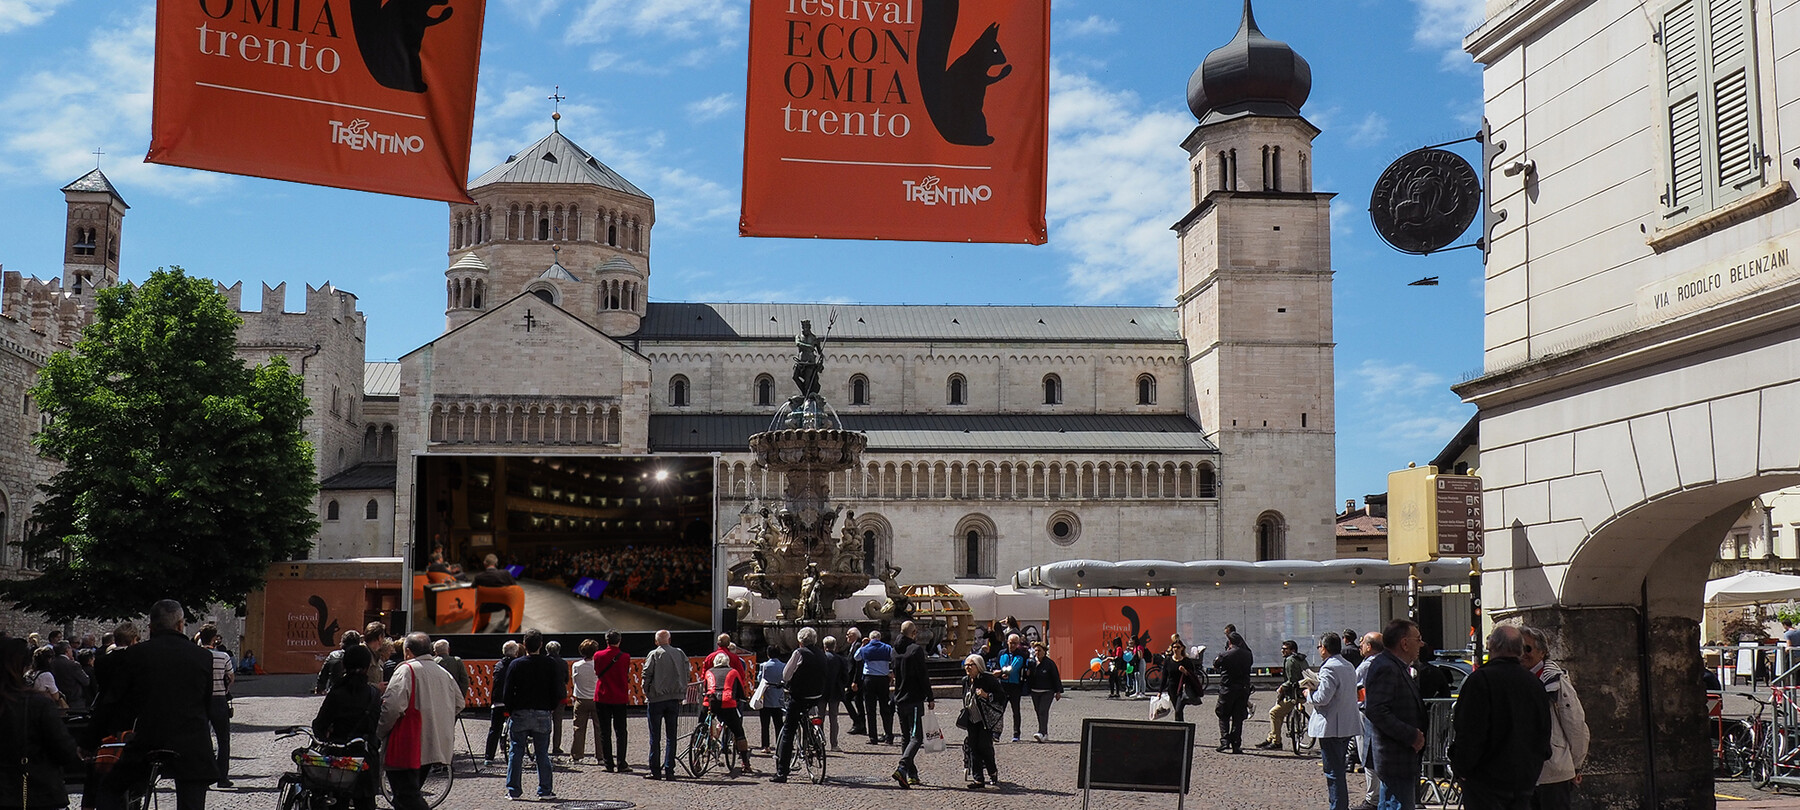 Das Festival dell‘Economia in Trento